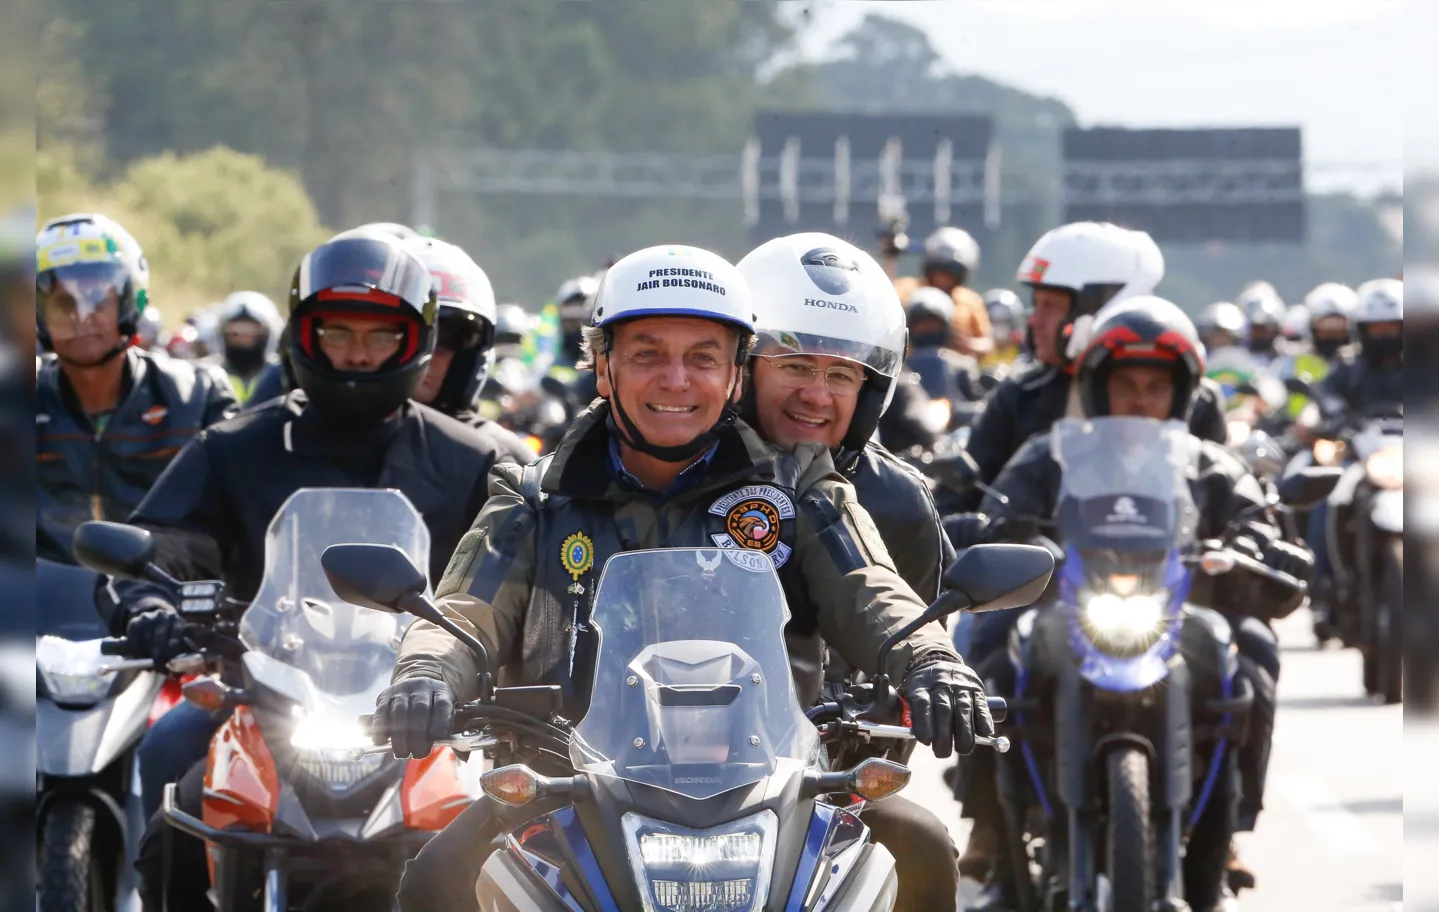 Apoiadores do presidente falaram em 1,3 milhão de motos no evento | Foto: Alan Santos/PR